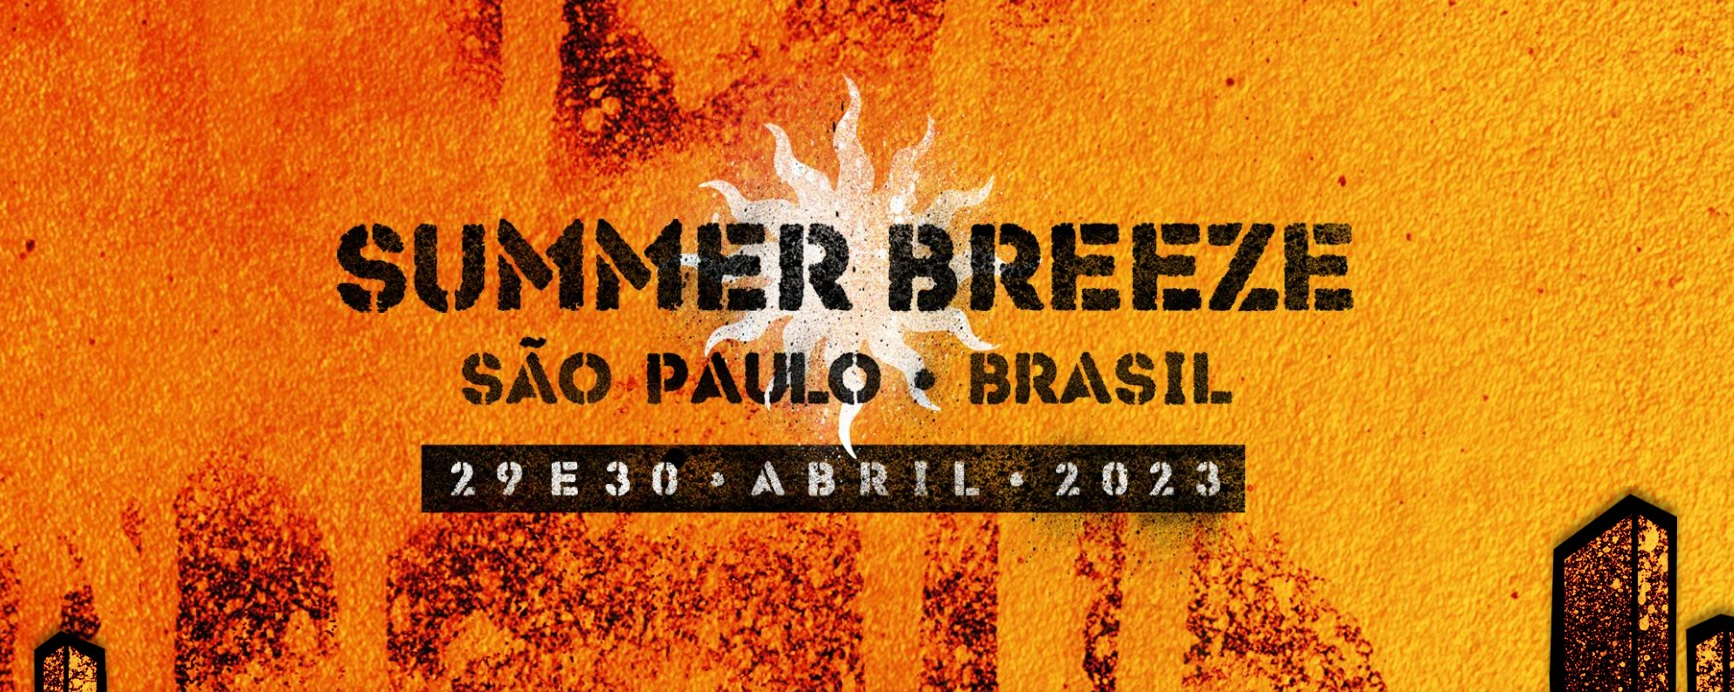 Summer Breeze Open Air: o novo festival de heavy metal que So Paulo recebe  em 2023!